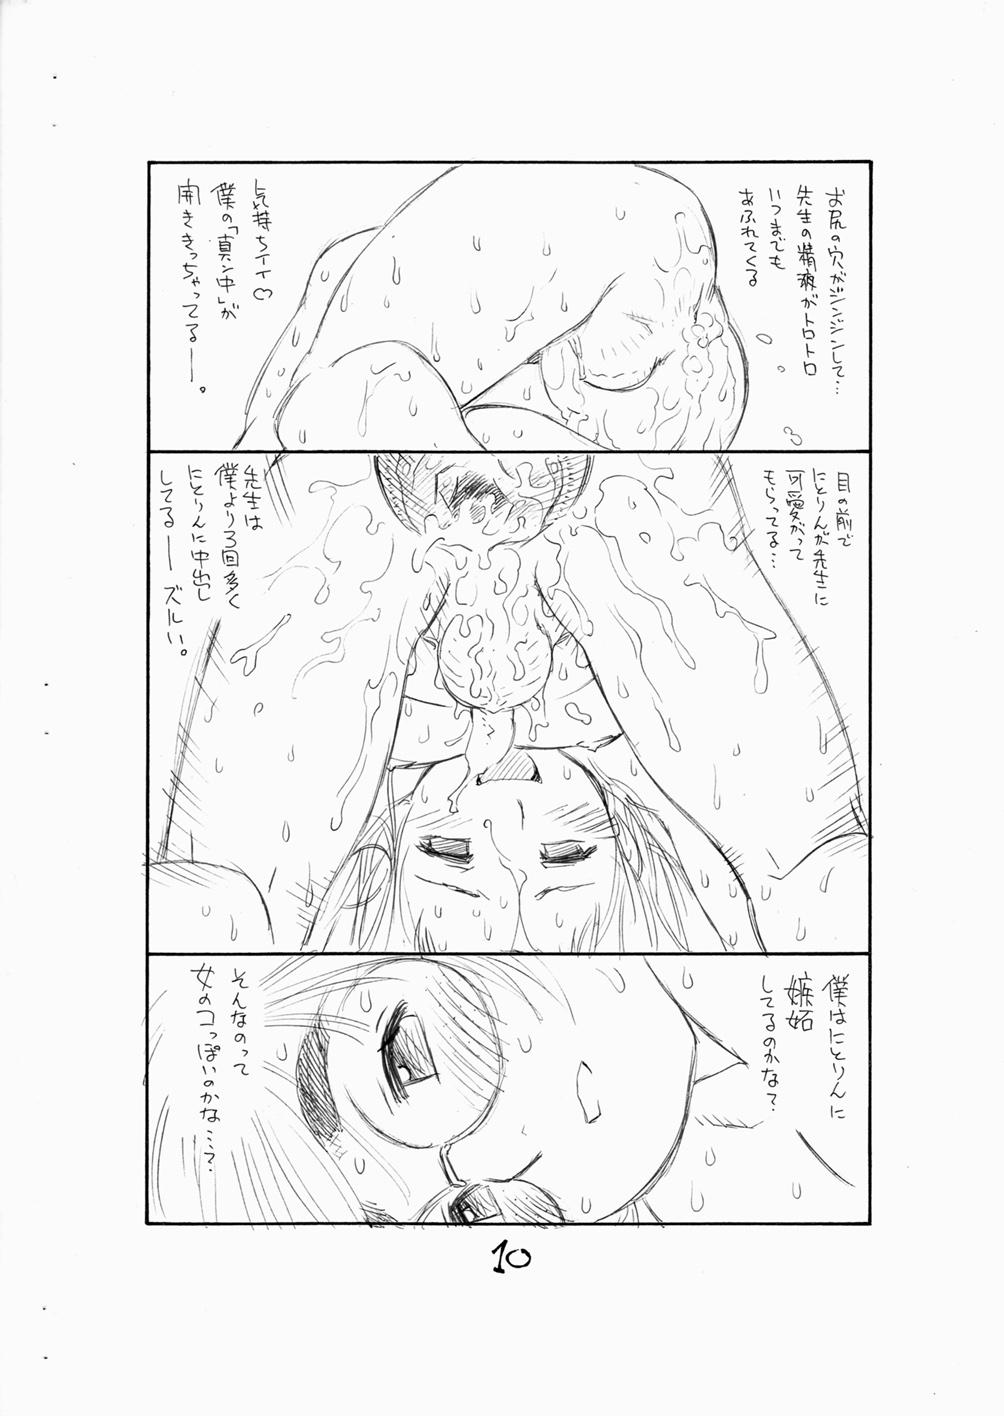 Asses Bokutachi Otokonoko 3 - Hourou musuko Big Dildo - Page 12